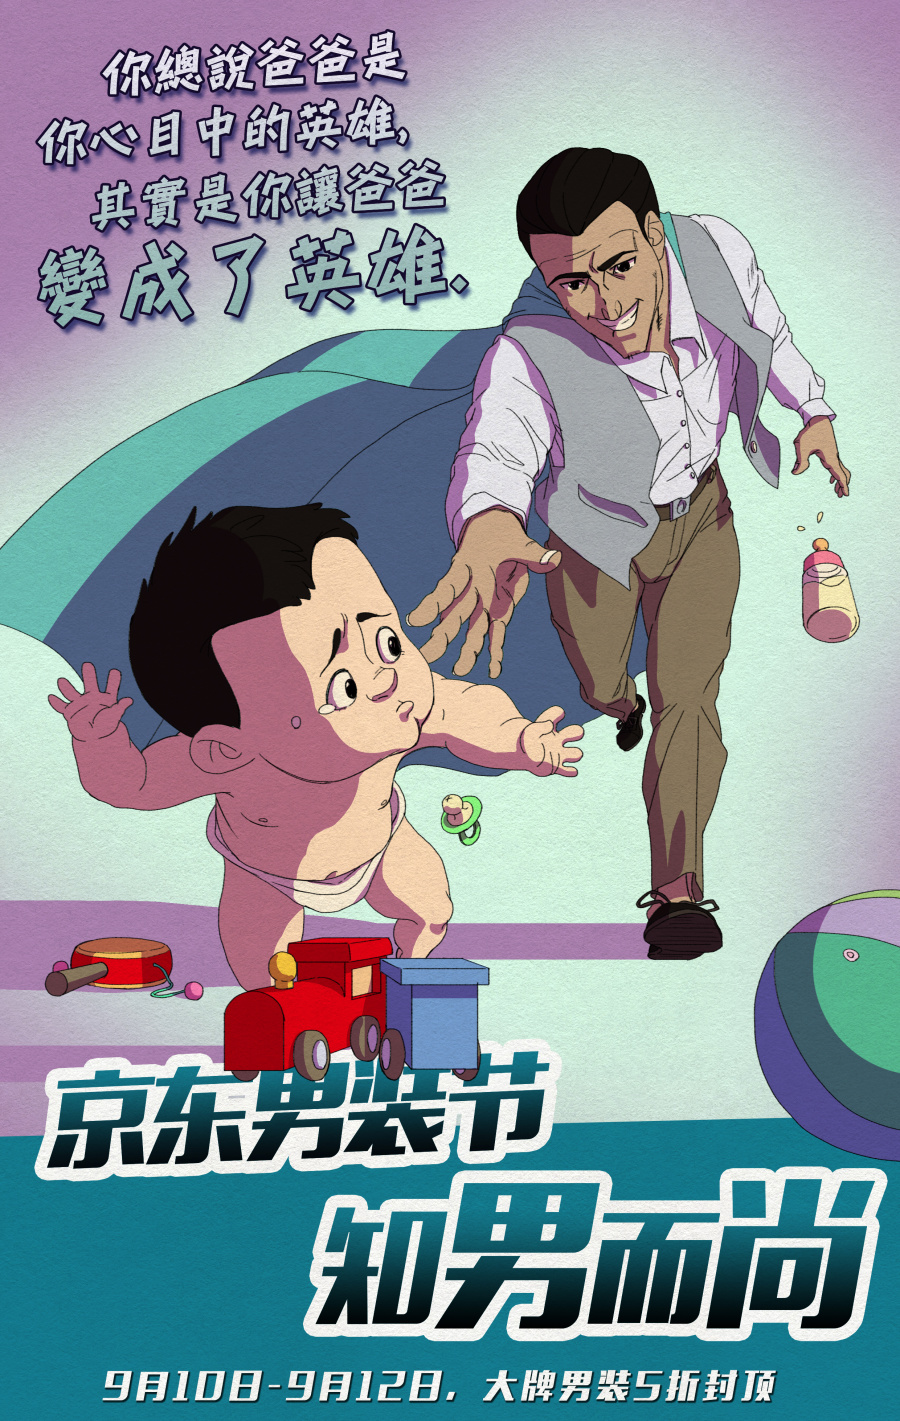 京东购物活动京东男装节宣传海报|商业插画|插